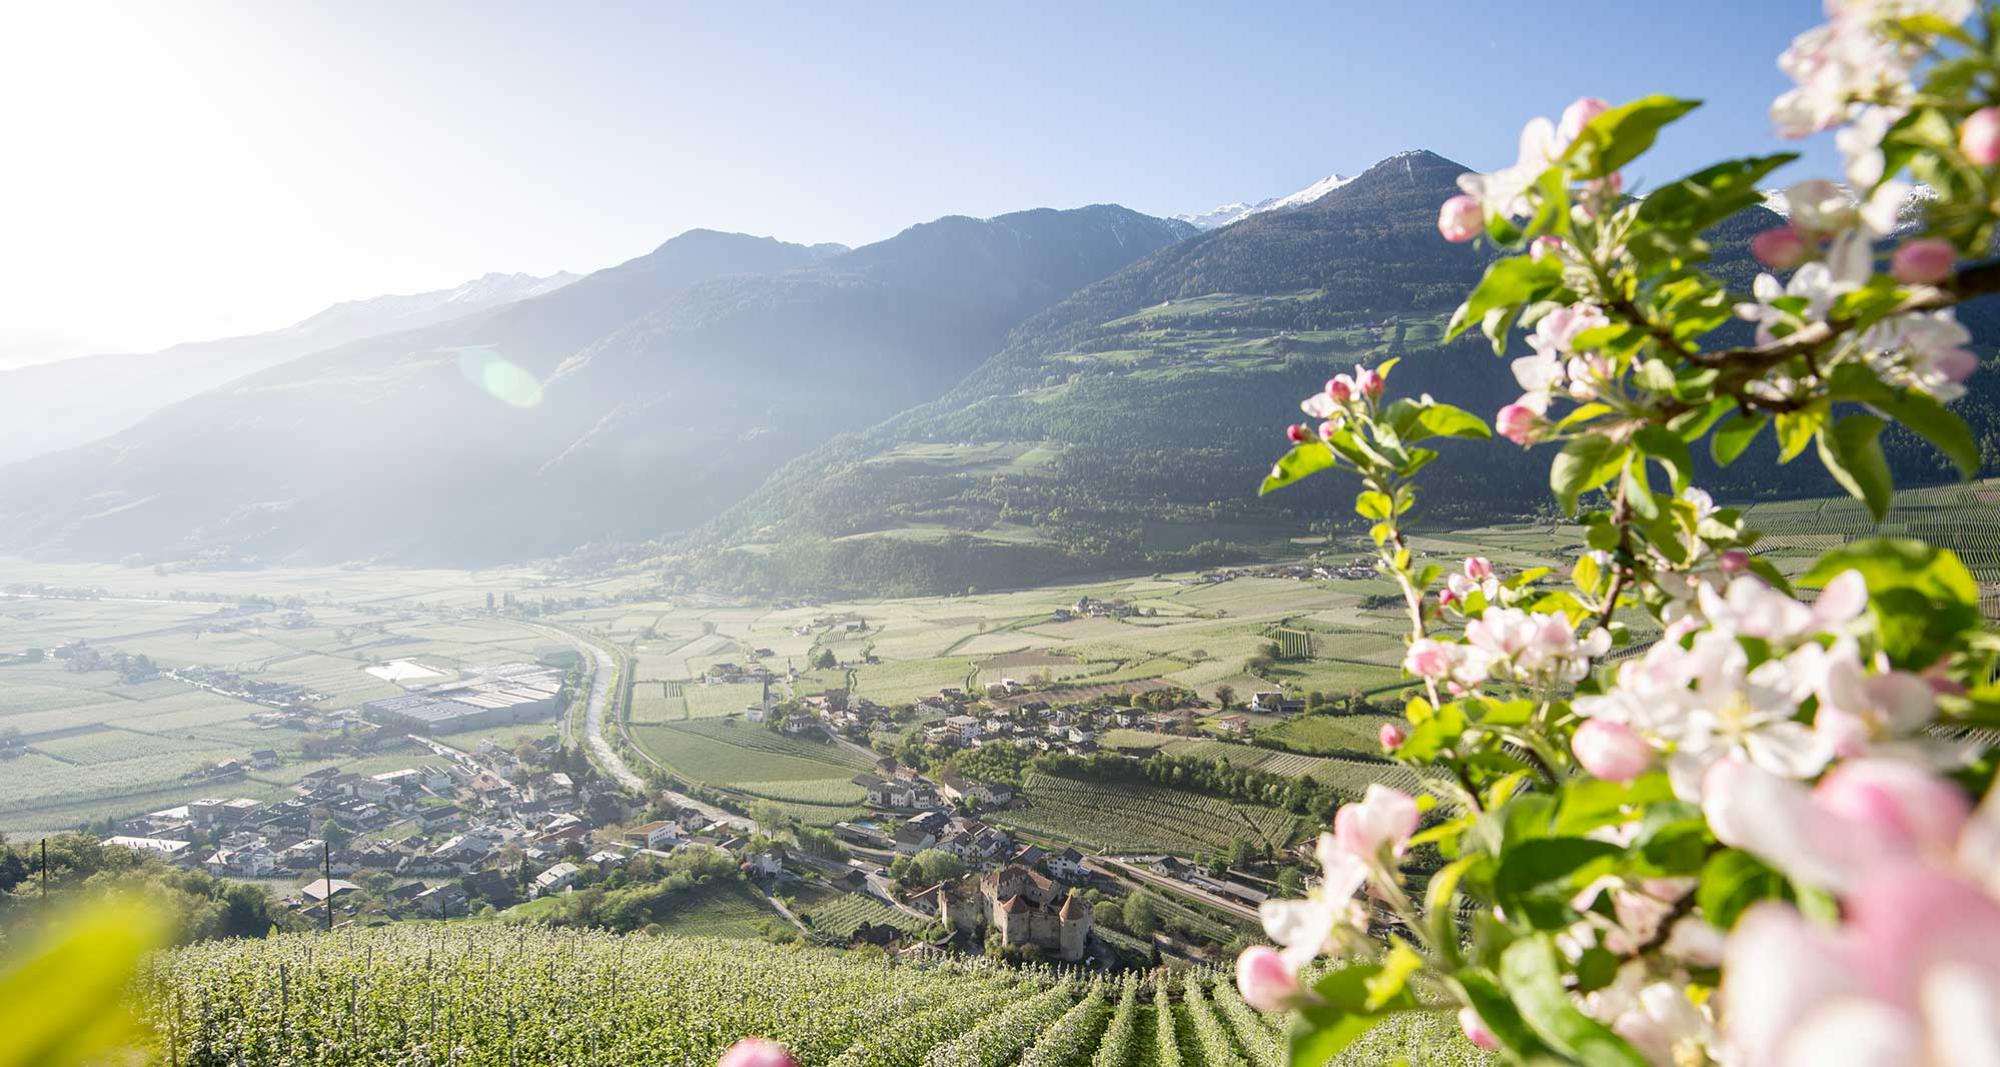 Apfelblüte und Blick in den Vinschgau